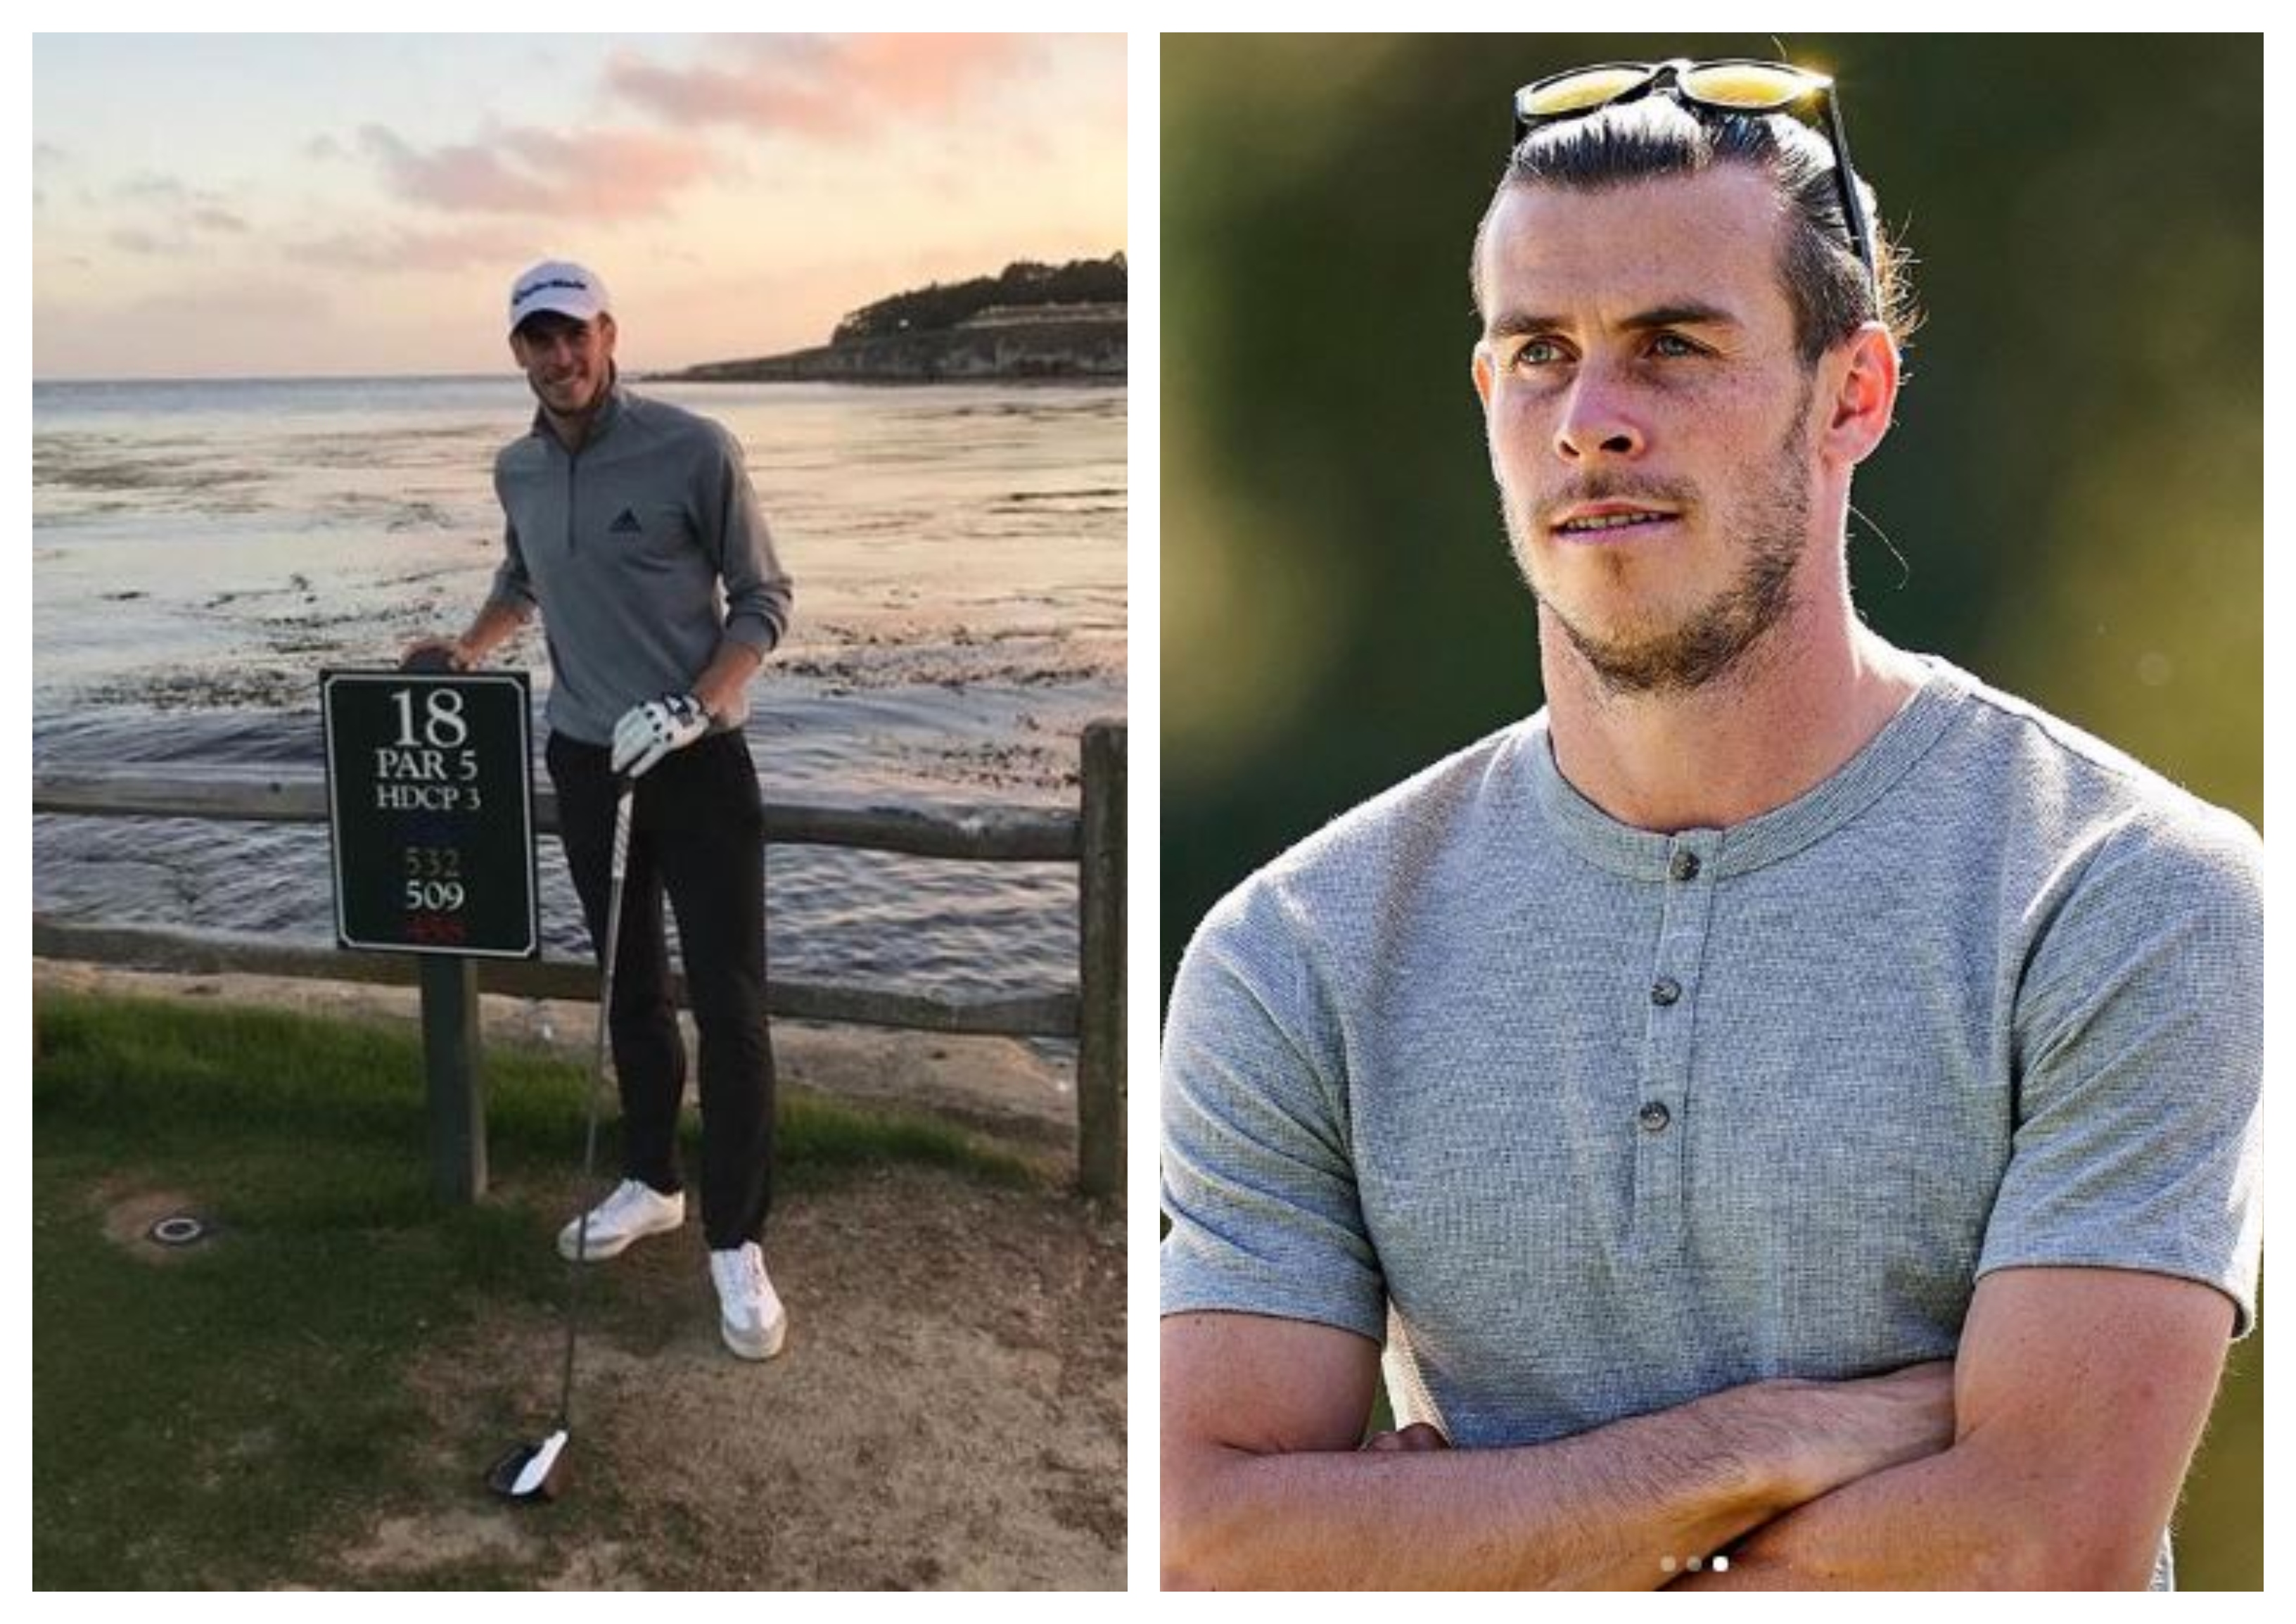 Gareth Bale siempre ha mostrado su pasión por el golf. (Foto Prensa Libre: Instagram @garethbale11)